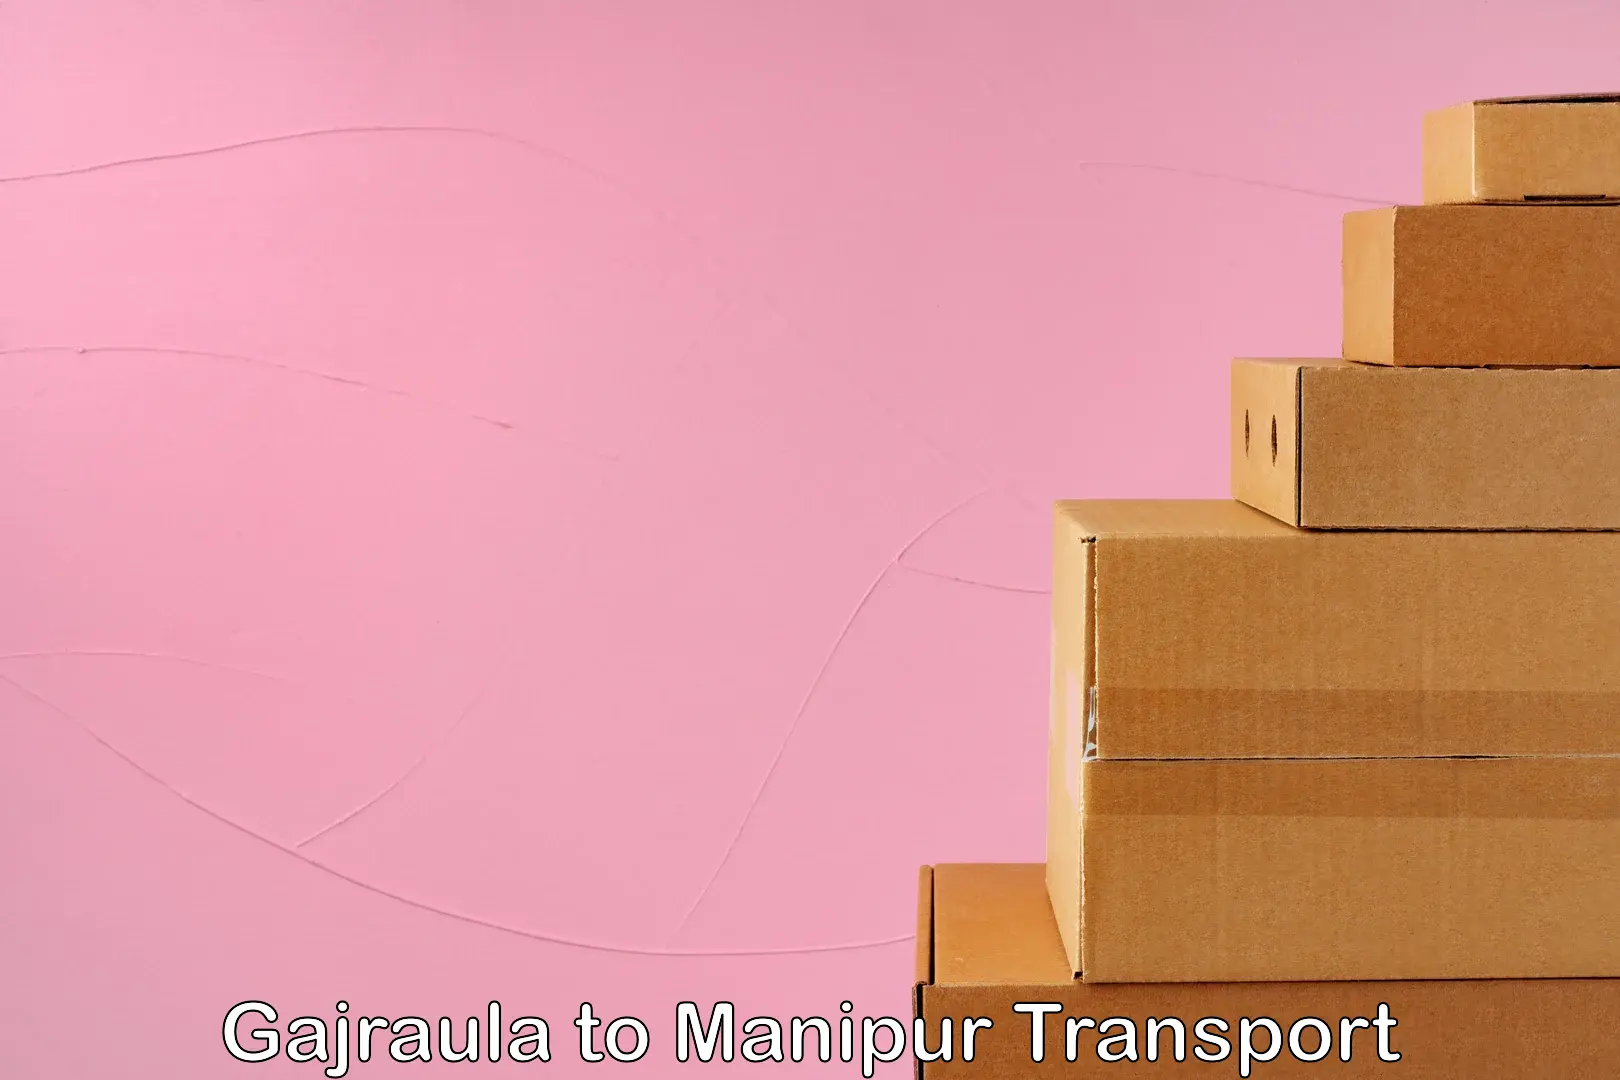 Goods transport services in Gajraula to Churachandpur